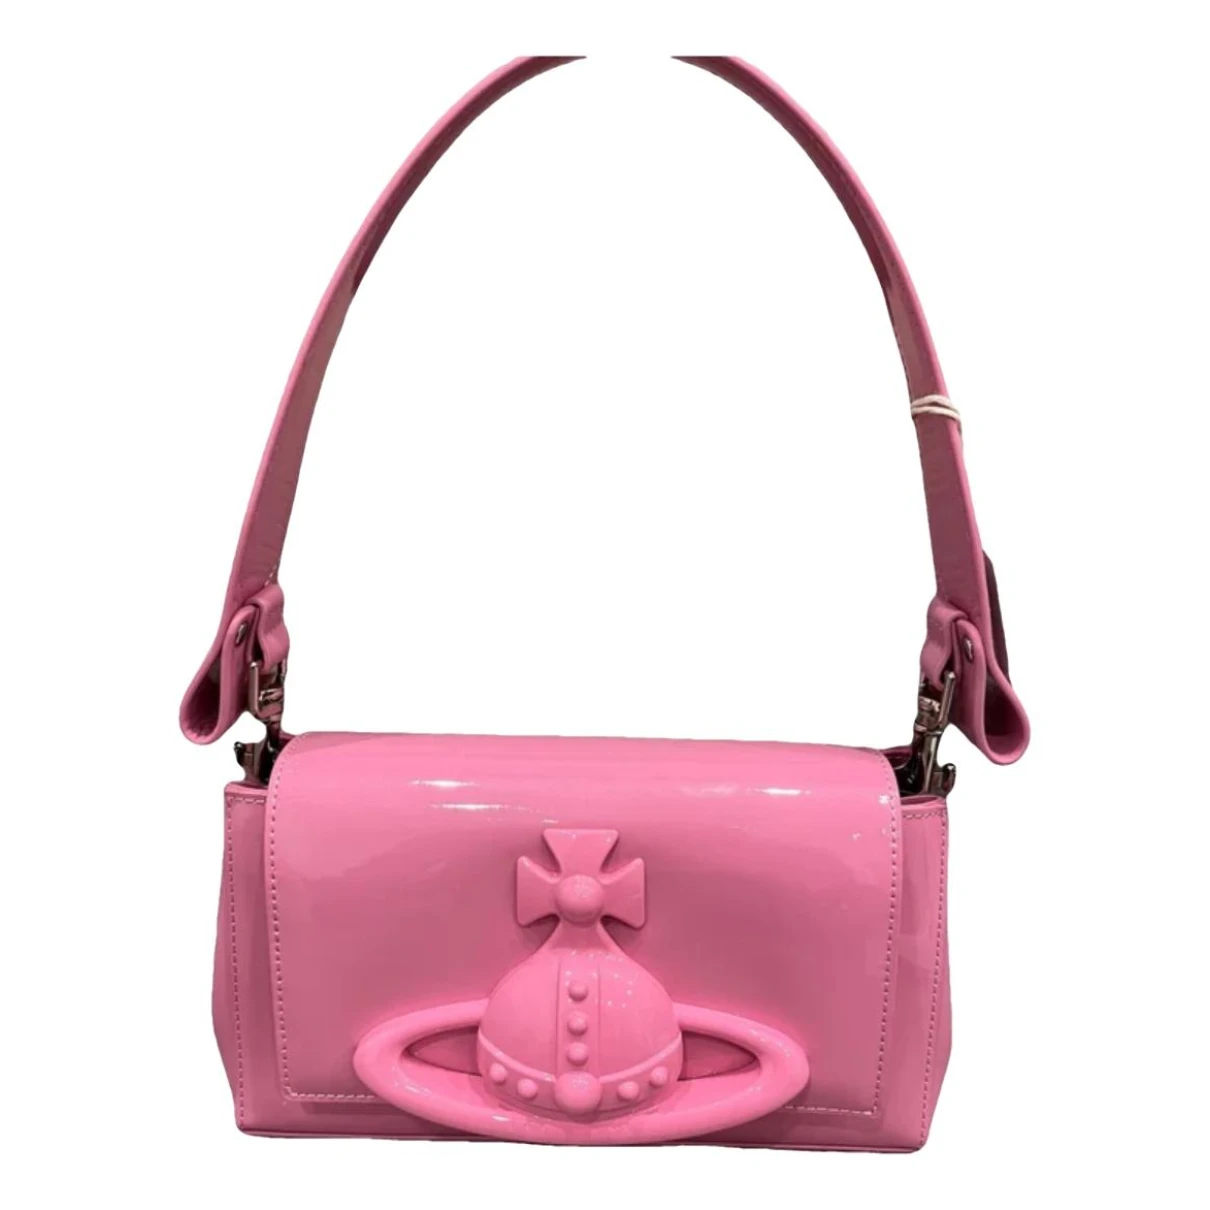 Pre-owned Vivienne Westwood Leather Handbag In Pink